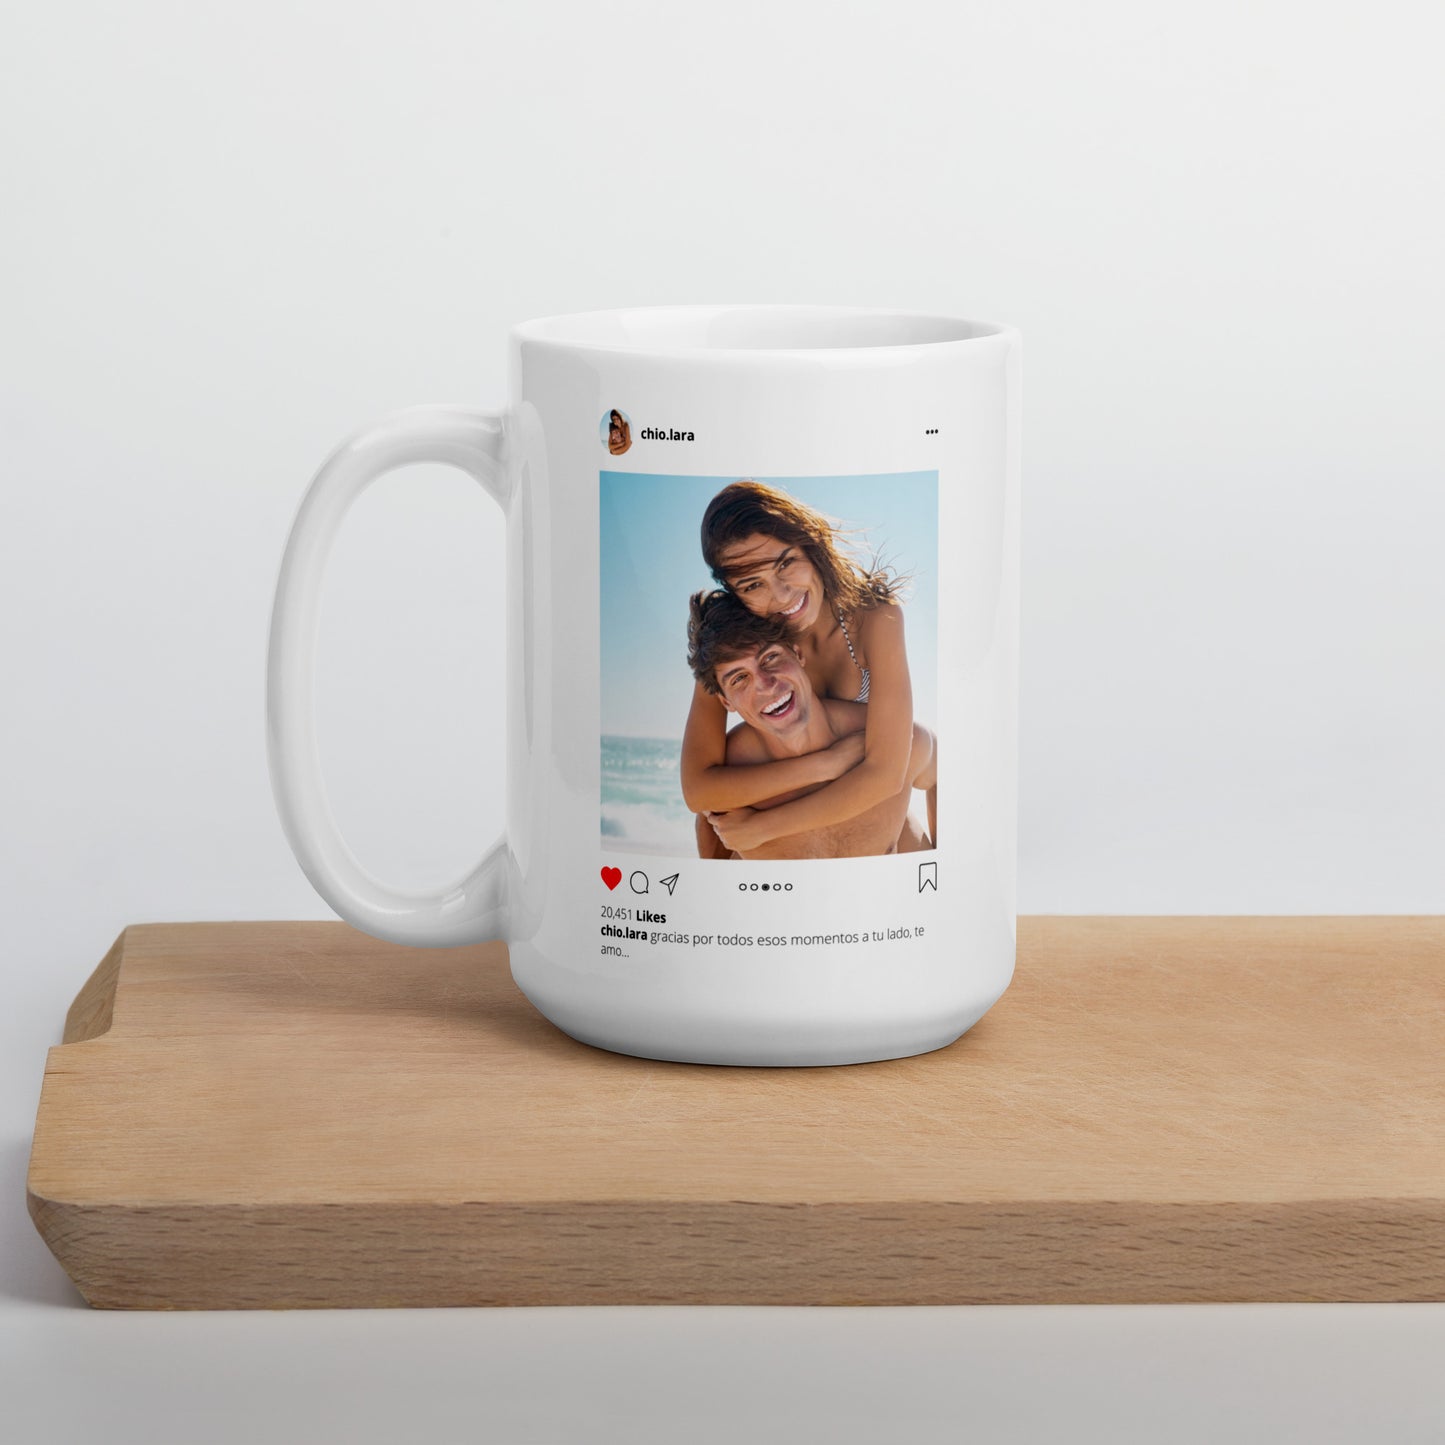 Personalized Large Mug